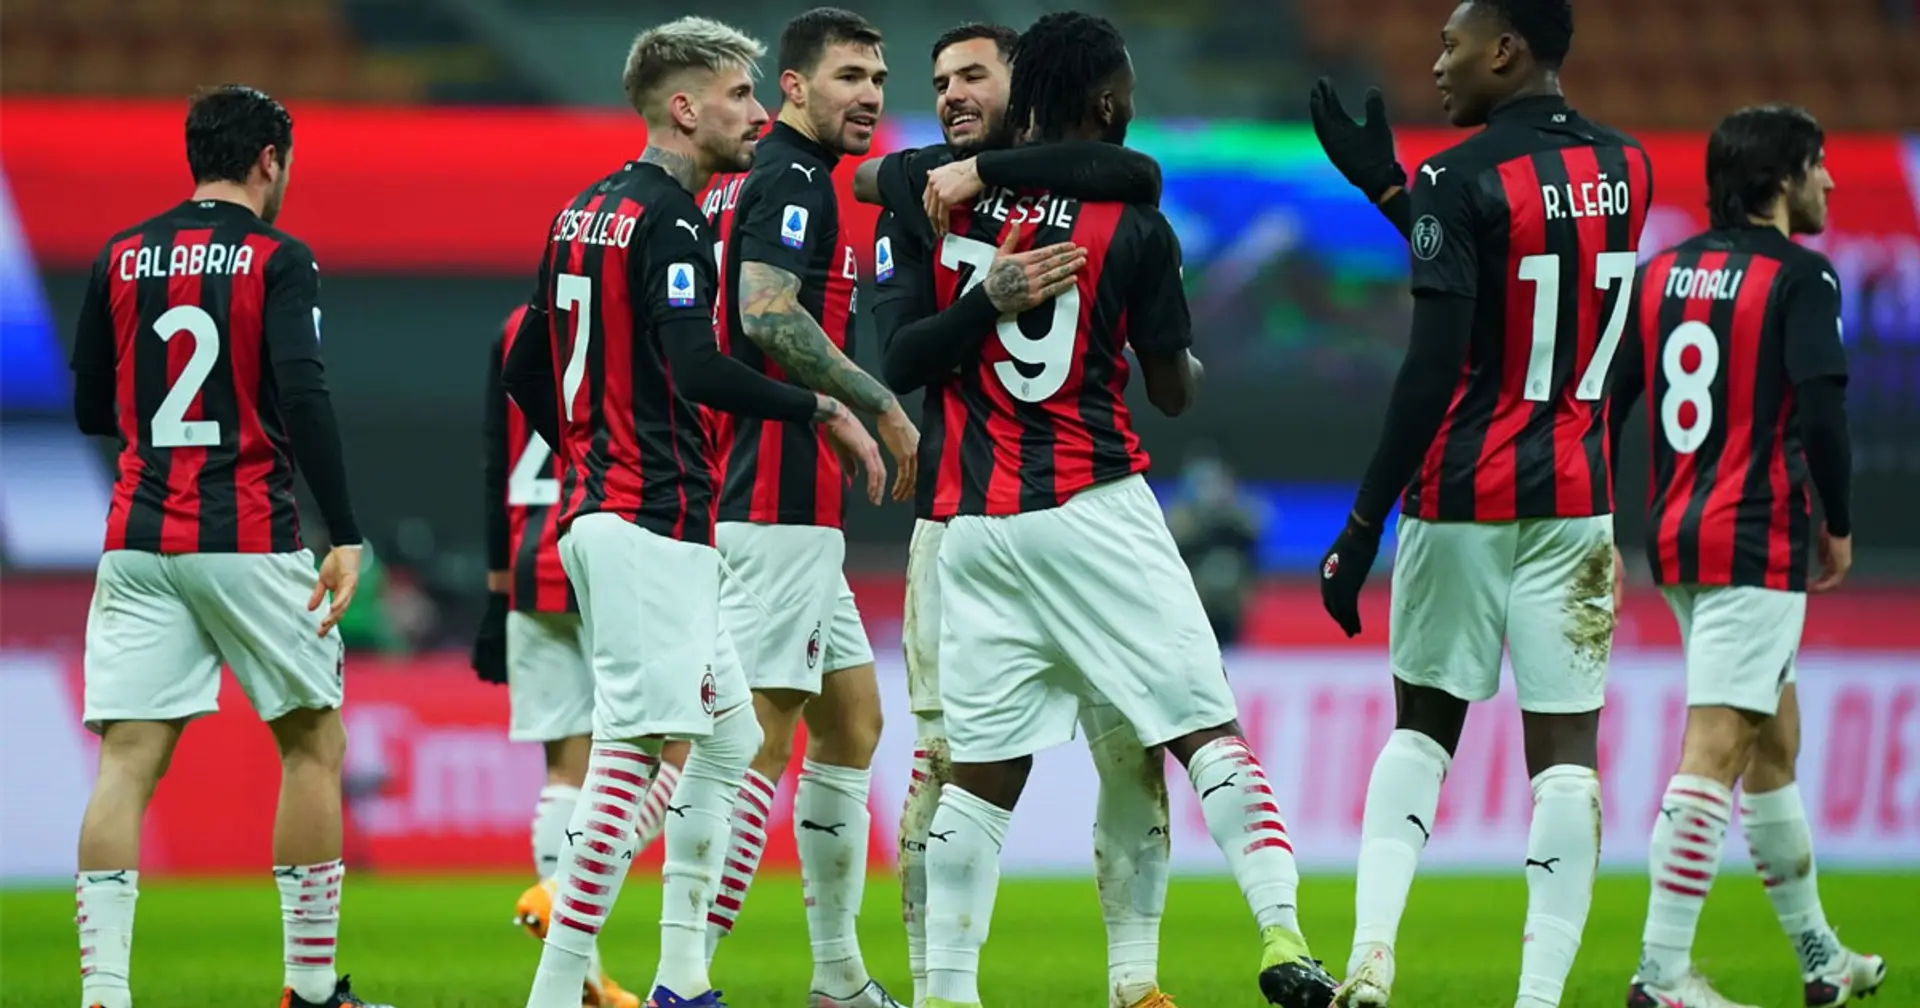 Milan-Torino 2-0: rossoneri semplicemente magnifici!